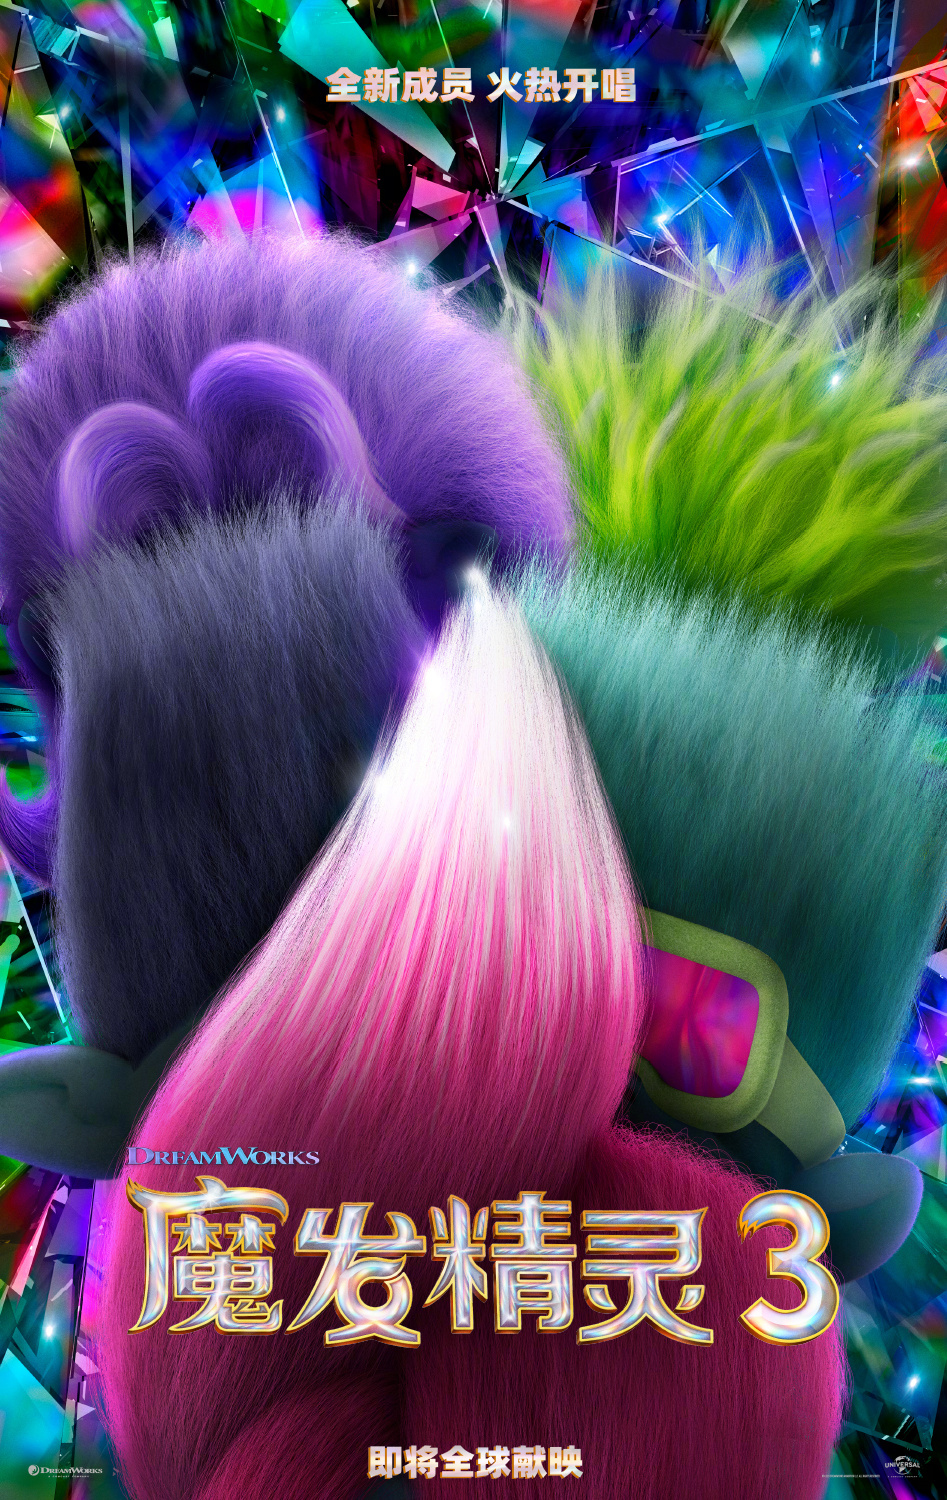 梦工厂《魔发精灵3》发布海报与首支预告片，11月17日北美上映